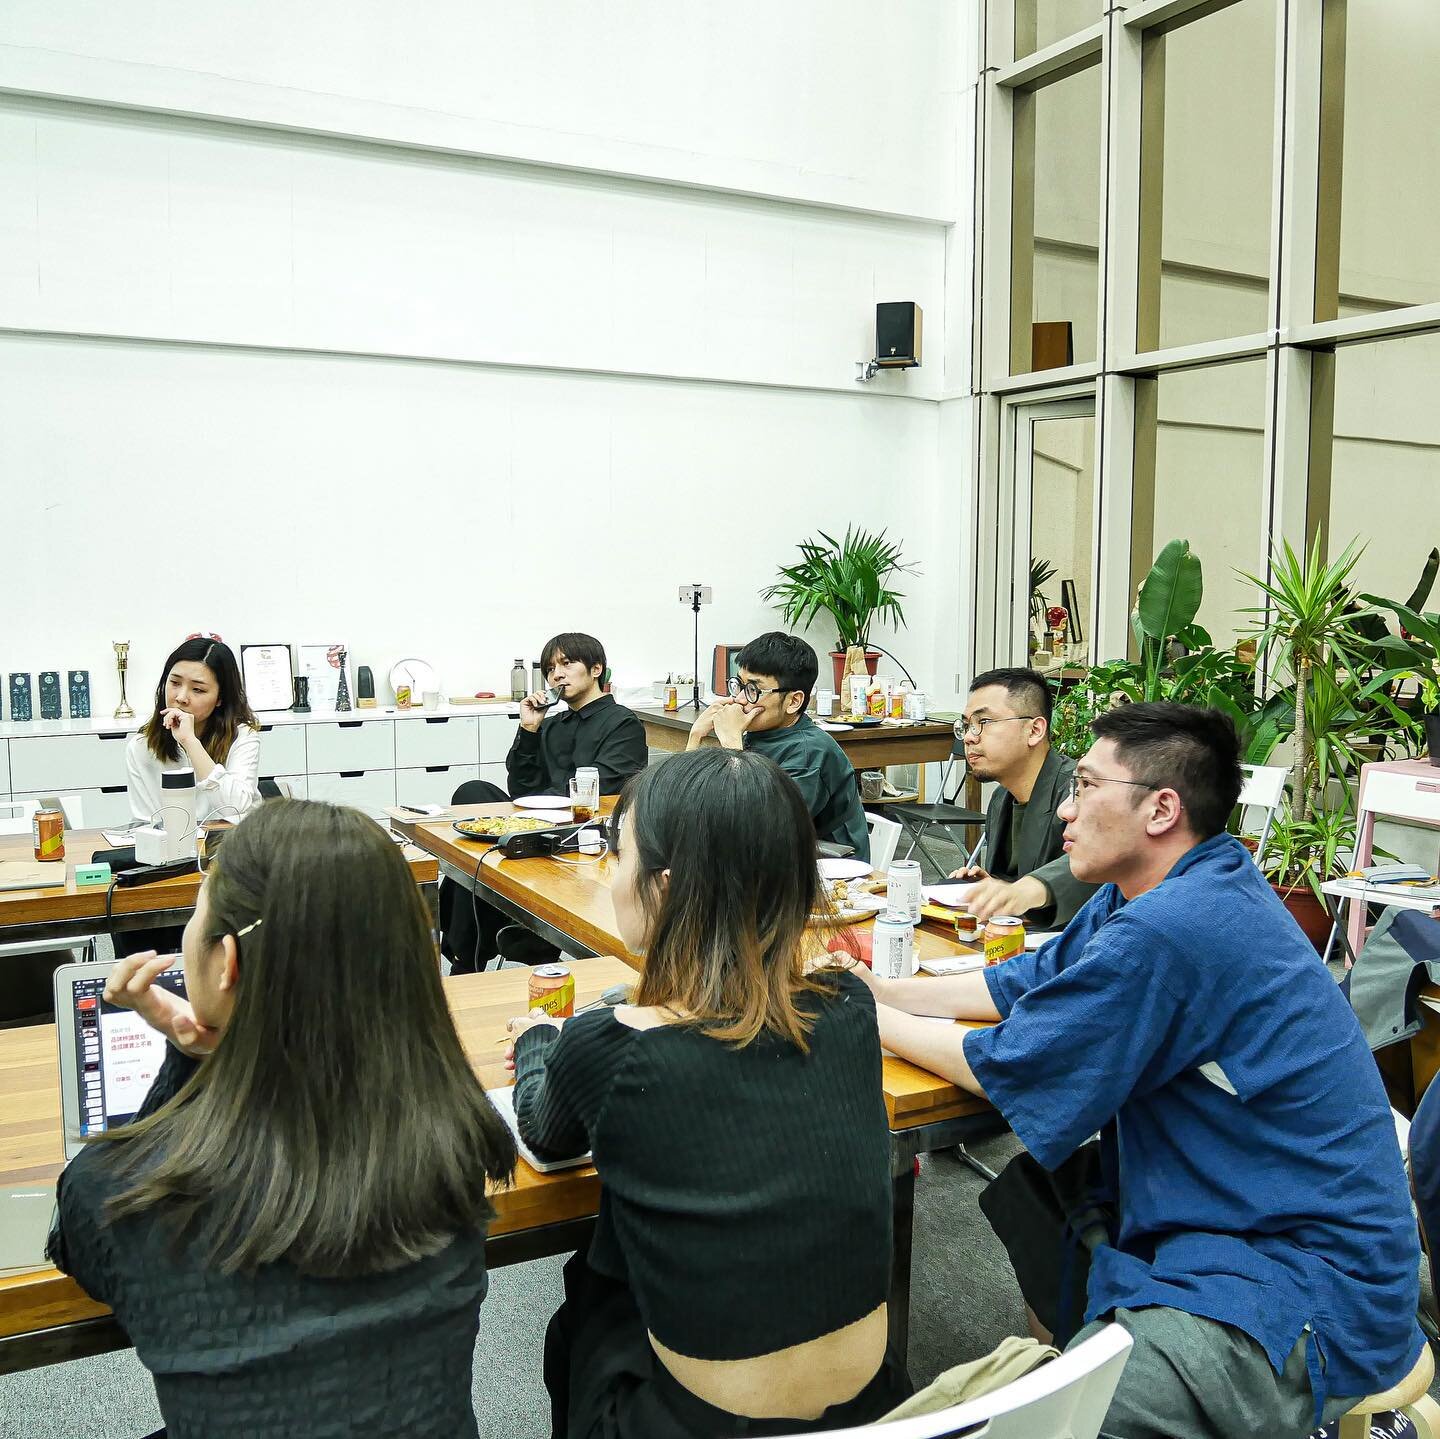 The Rebranding Lab 最終發表日在上週五圓滿完成，我們邀請了數位知名設計師一同參與指教。感謝  @tinganho.info @sung_cheng_jie @tien0331 @fangyenwen 蒞臨參與！
作品與網站即將推出🍾️🍾️🍾️